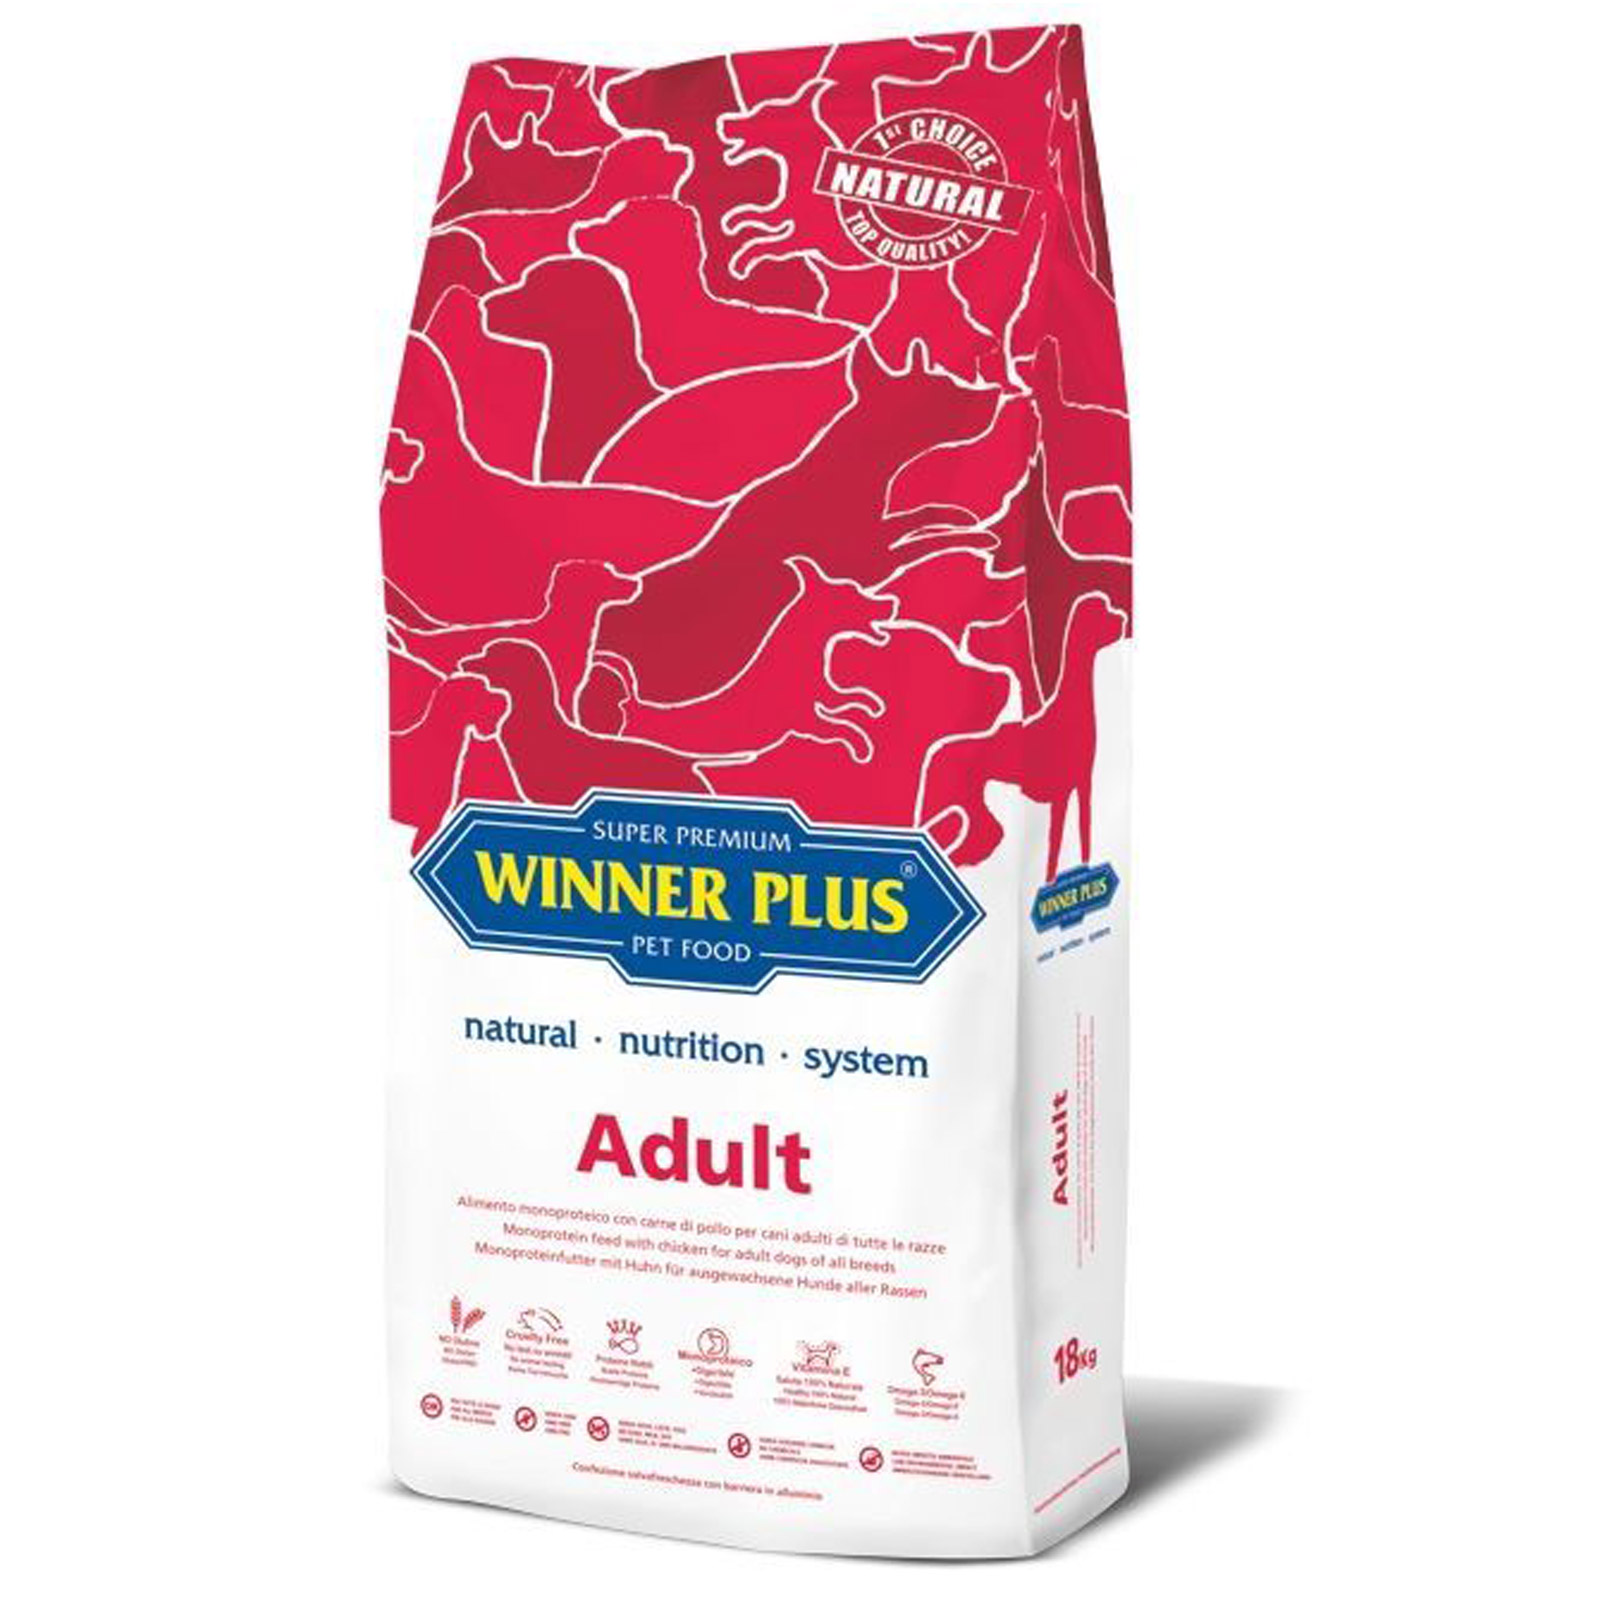 Winner Plus Super Premium Adult